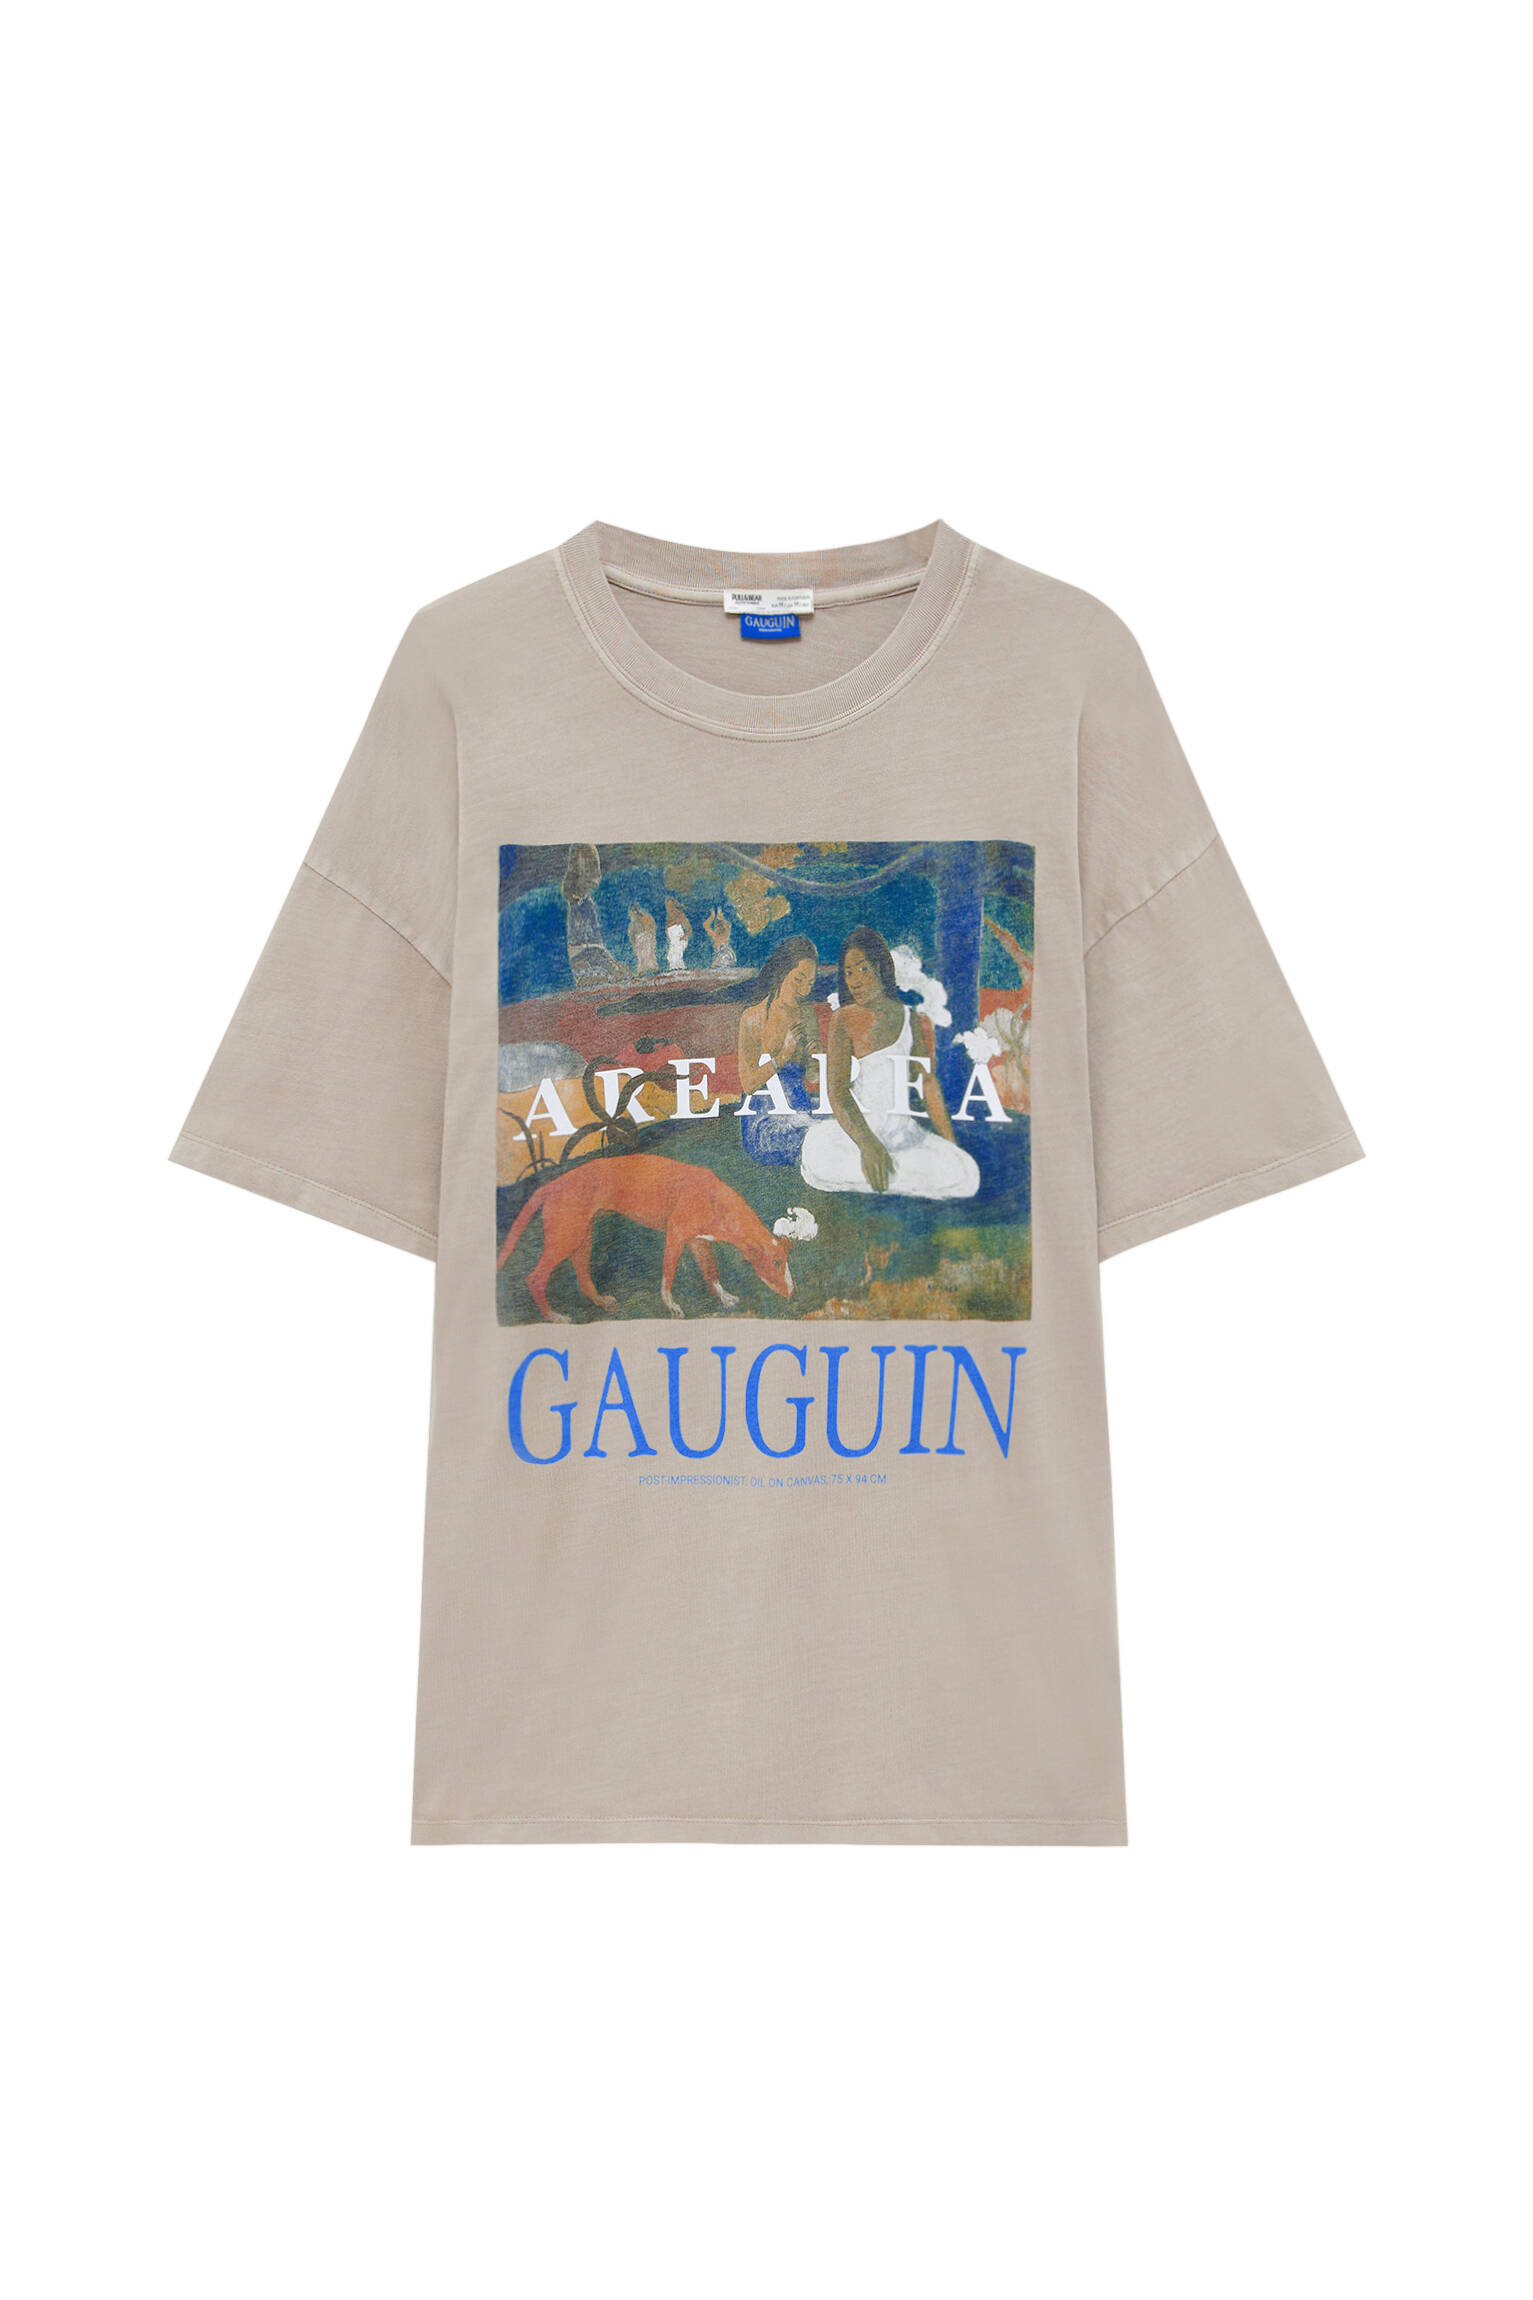 Pull&bear Femme T-shirt Gauguin à Col Rond, Manches Courtes Et Imprimé De L'uvre « aerearea ». Marron Taupe Xs